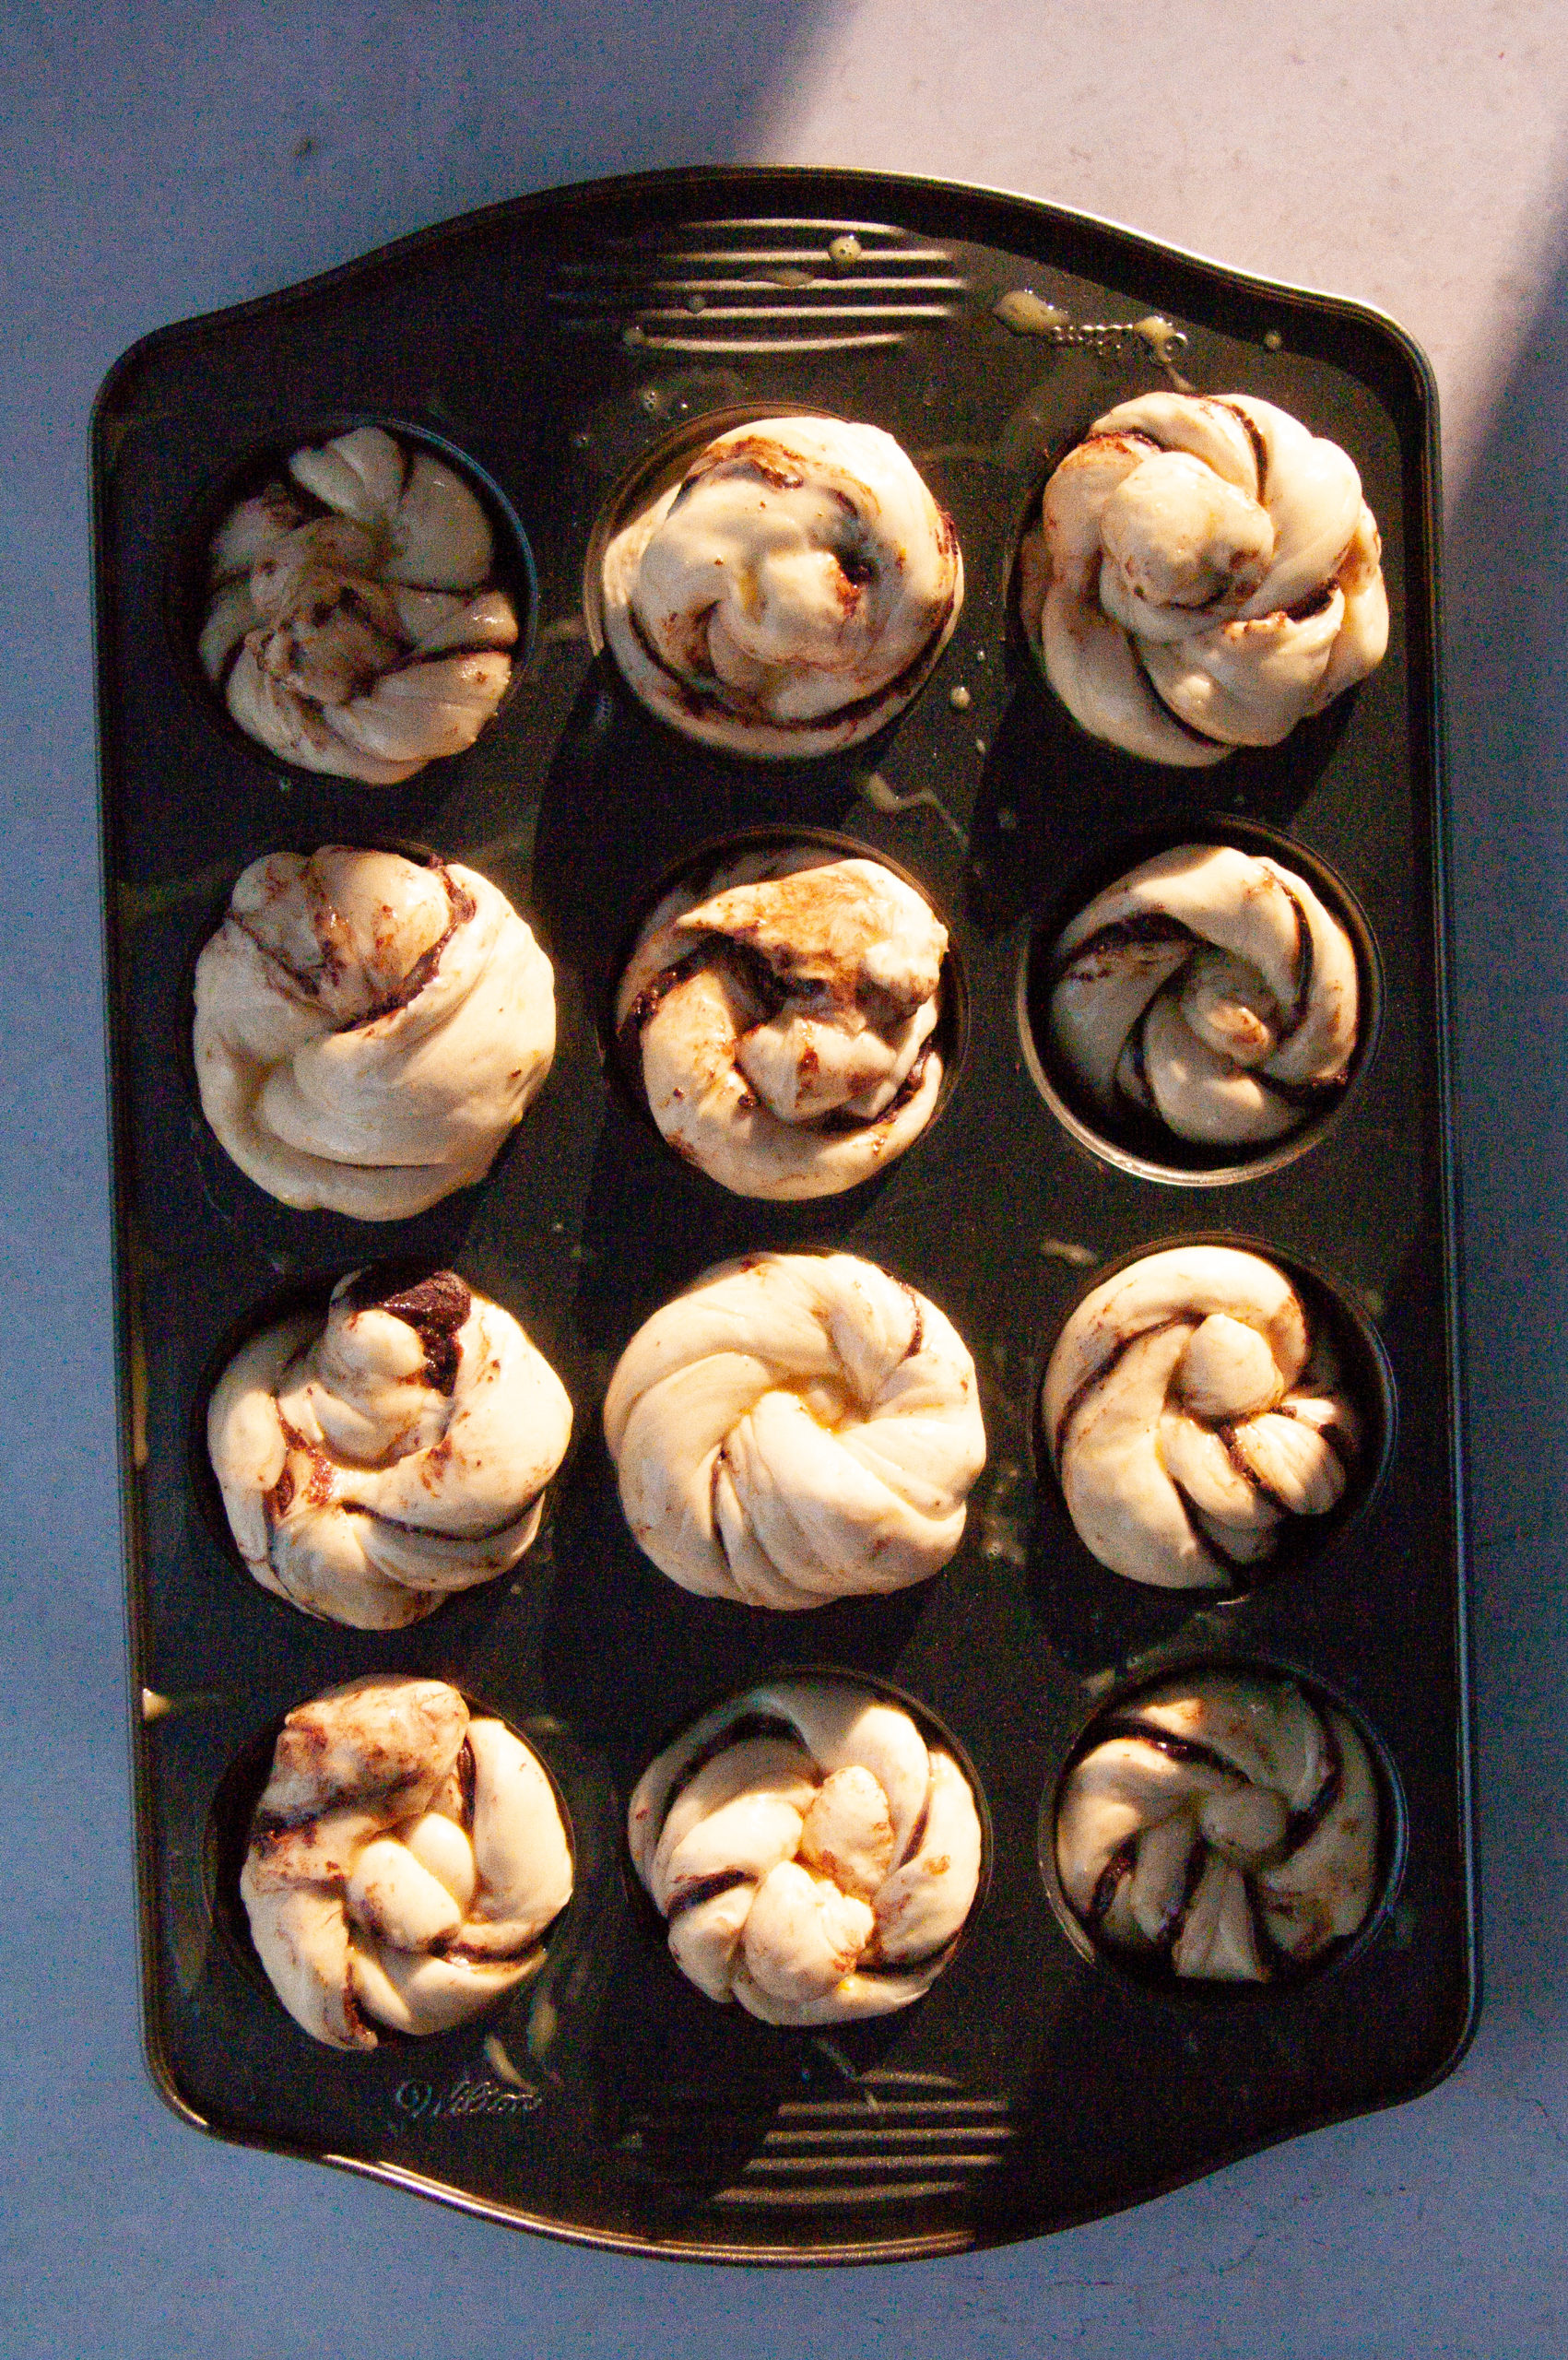 assembled orange buns on a dark muffin tin